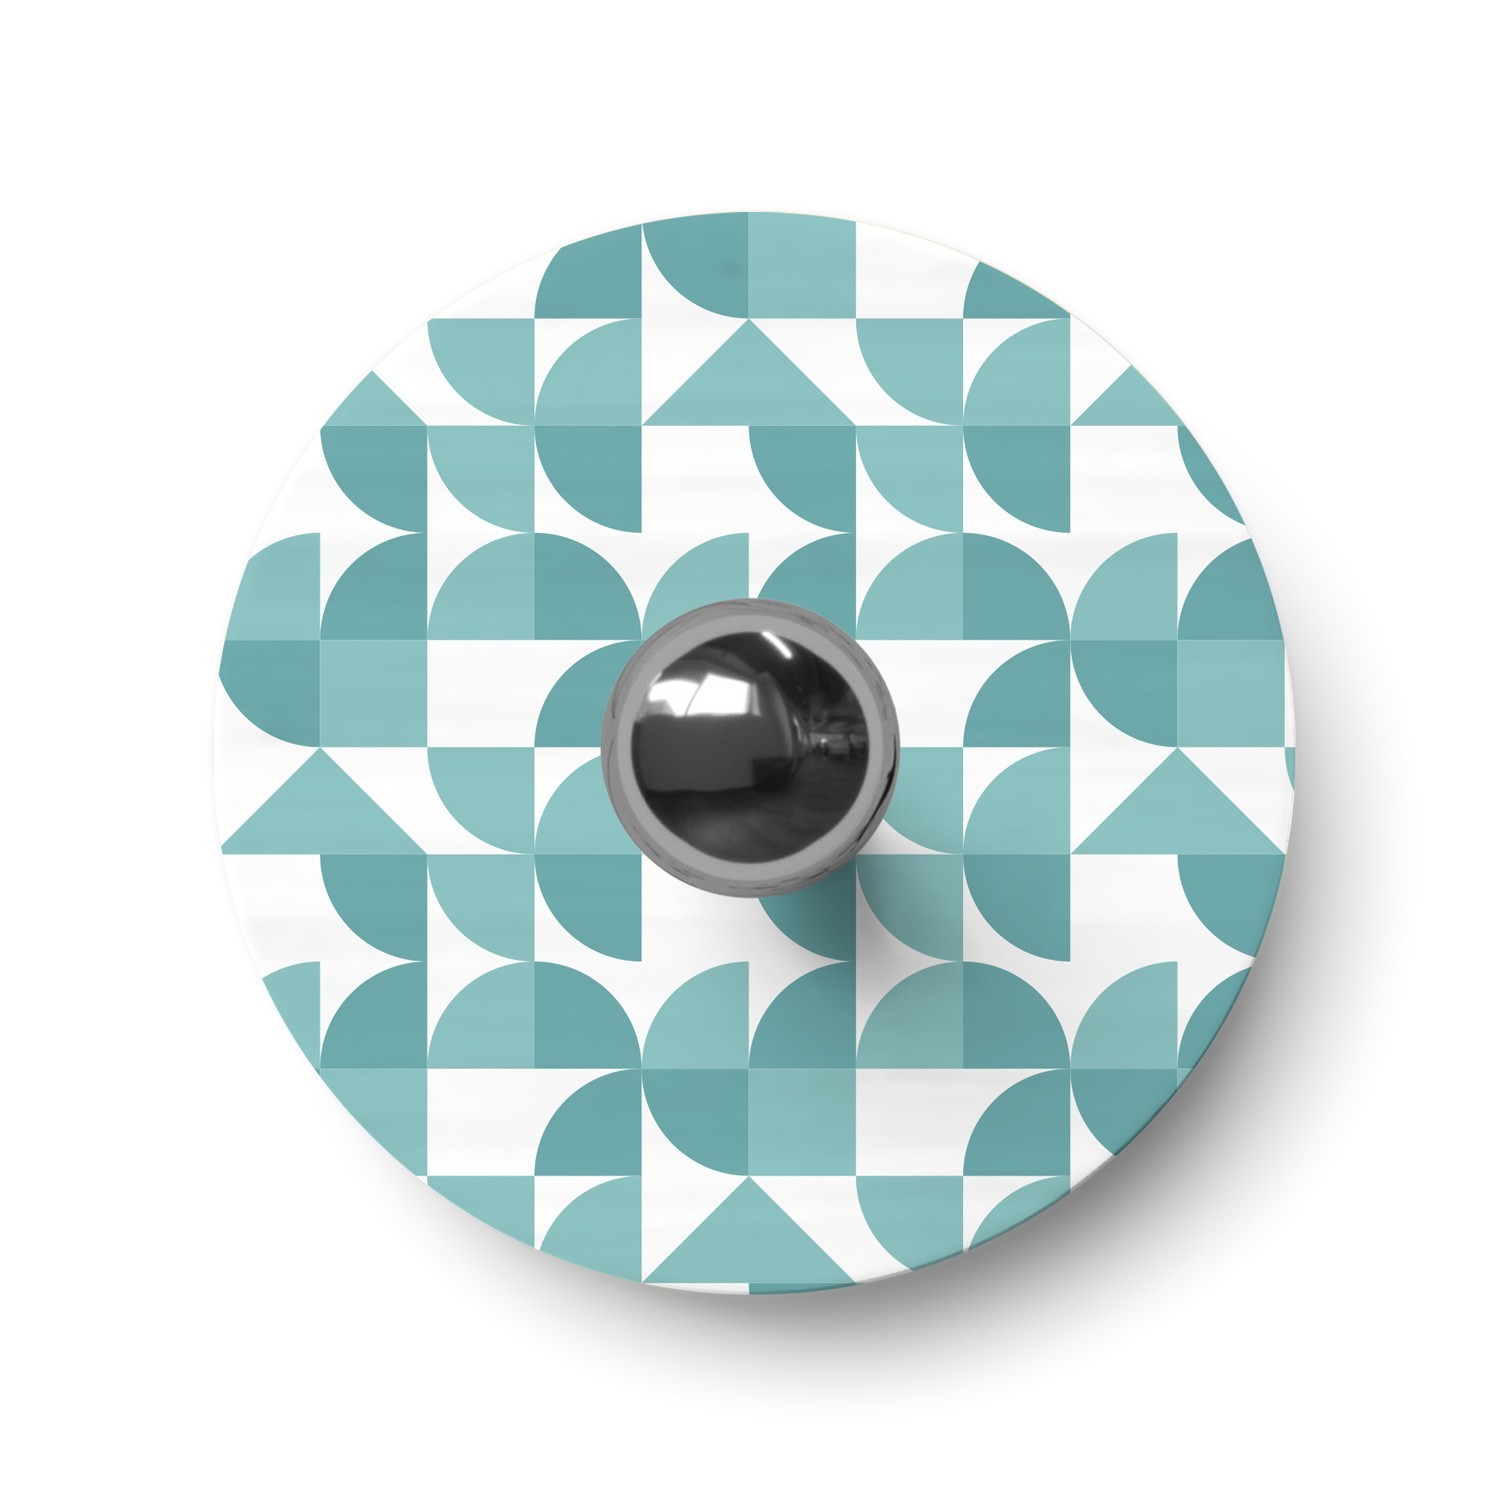 Paralume mini piatto Ellepì con disegni geometrici 'Kaleidoscope', diametro 24 cm - Made in Italy